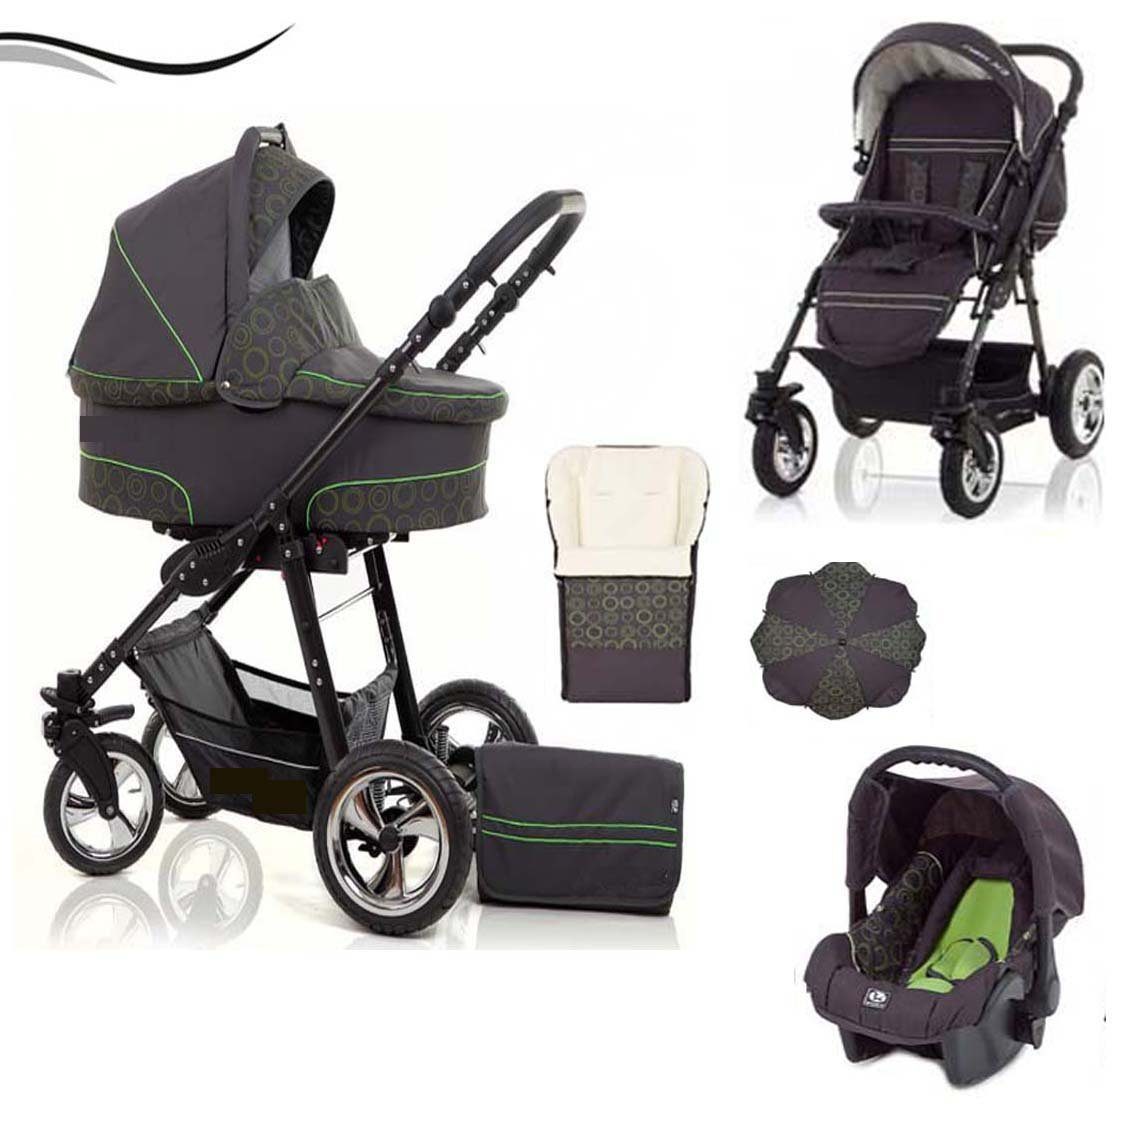 babies-on-wheels Kombi-Kinderwagen City Star 5 in 1 inkl. Autositz, Sonnenschirm und Fußsack - 18 Teile - von Geburt bis 4 Jahre in 16 Farben Grau-Grün-Dekor